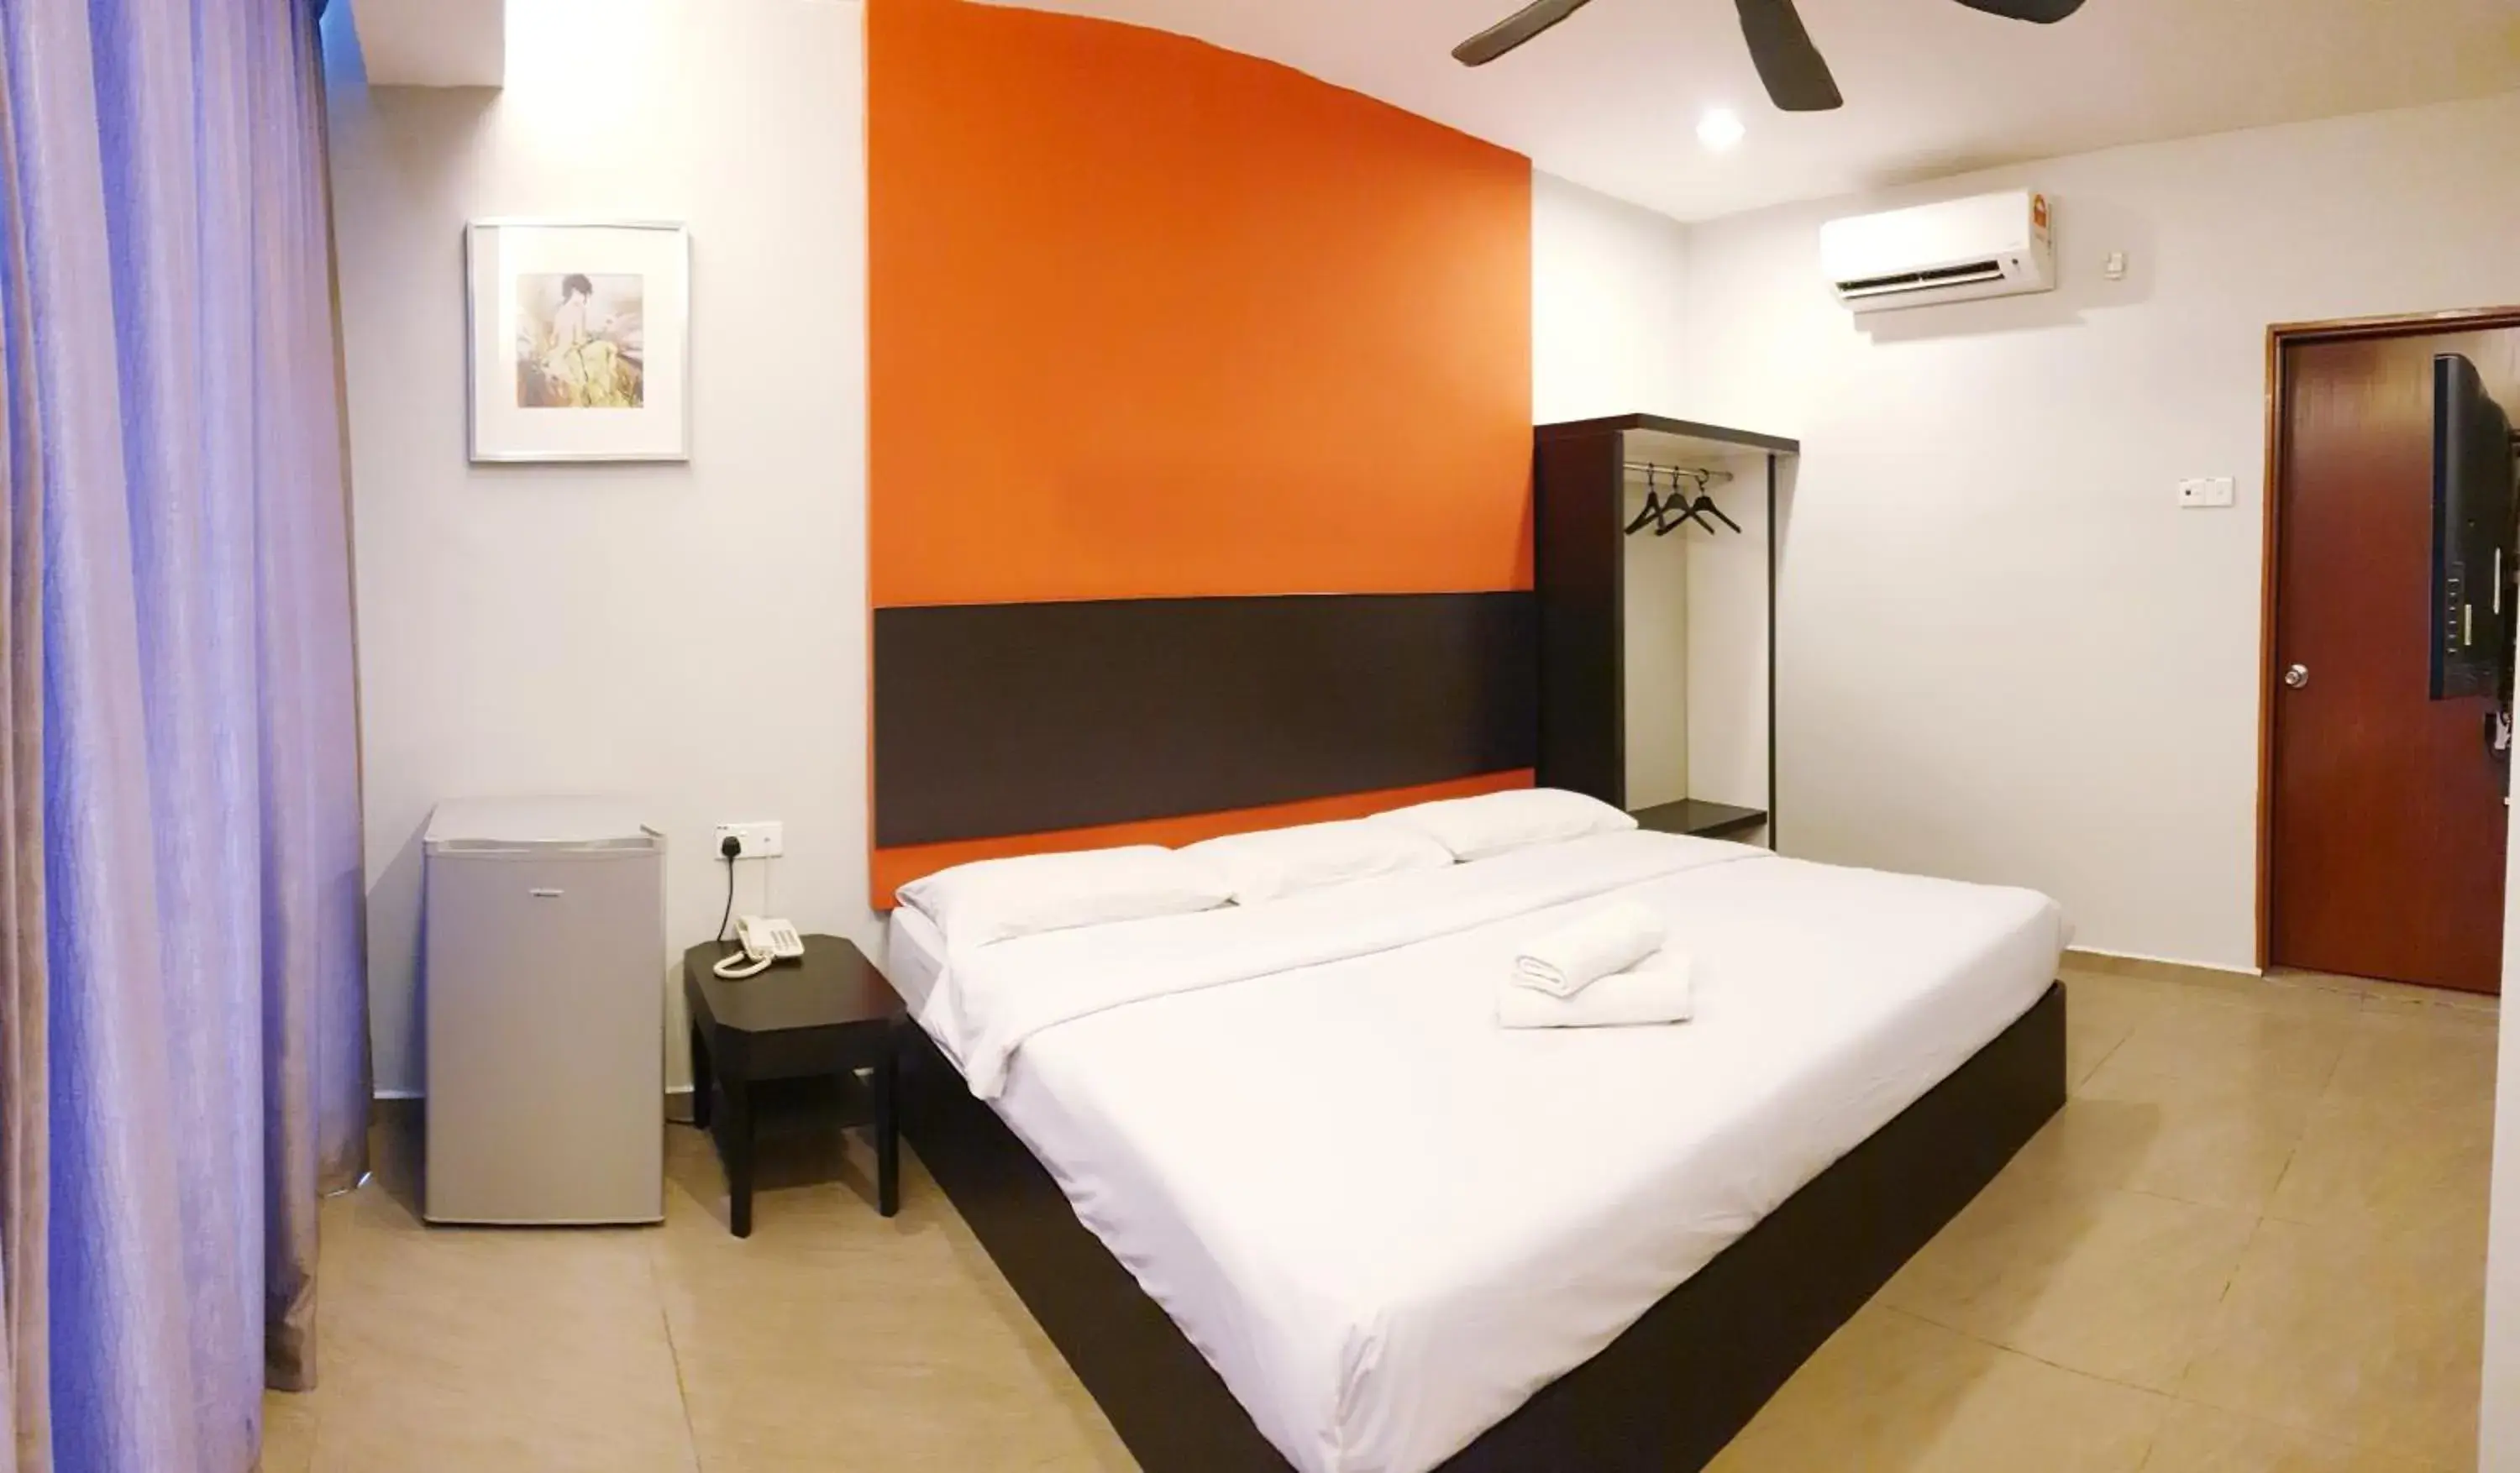 Bed in Golden Court Hotel - Tun Abdul Razak